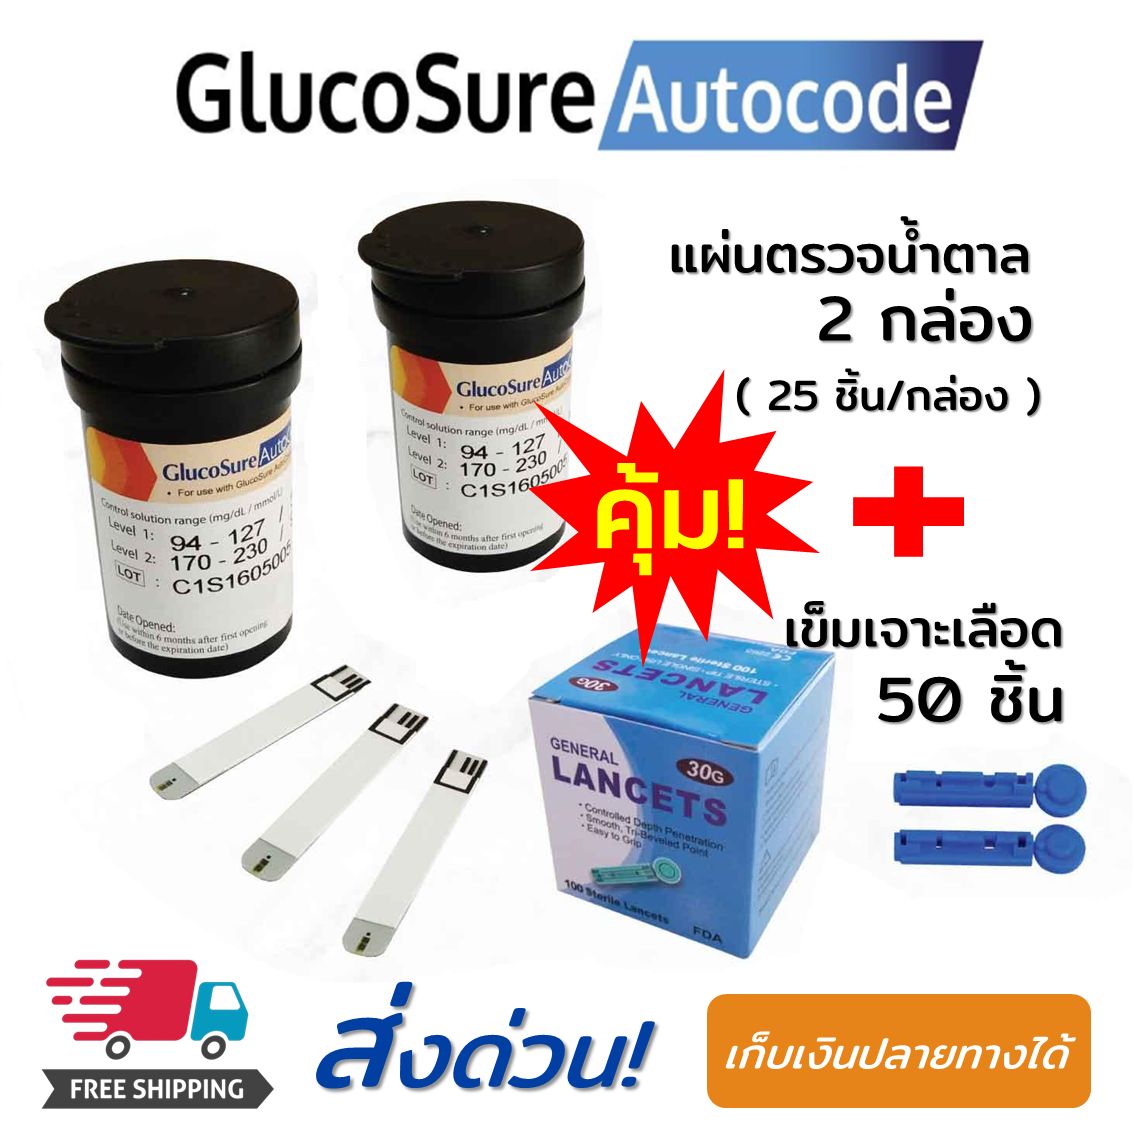 แผ่นตรวจน้ำตาล Glucosure Autocode Test Strips มีการรับประกัน แผ่นแถบวัดน้ำตาล 2 กล่อง (25 ชิ้น/กล่อง) + เข็มเจาะเลือด 50 ชิ้น ใช้กับเครื่องตรวจเบาหวาน